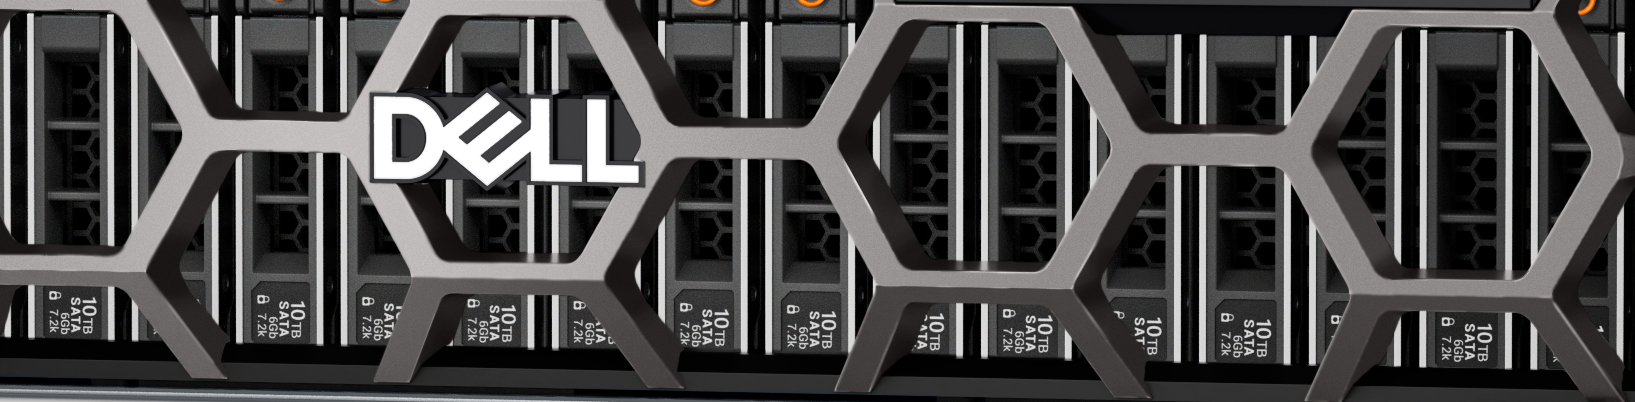 Dell PowerEdge R7615 Rack Server.